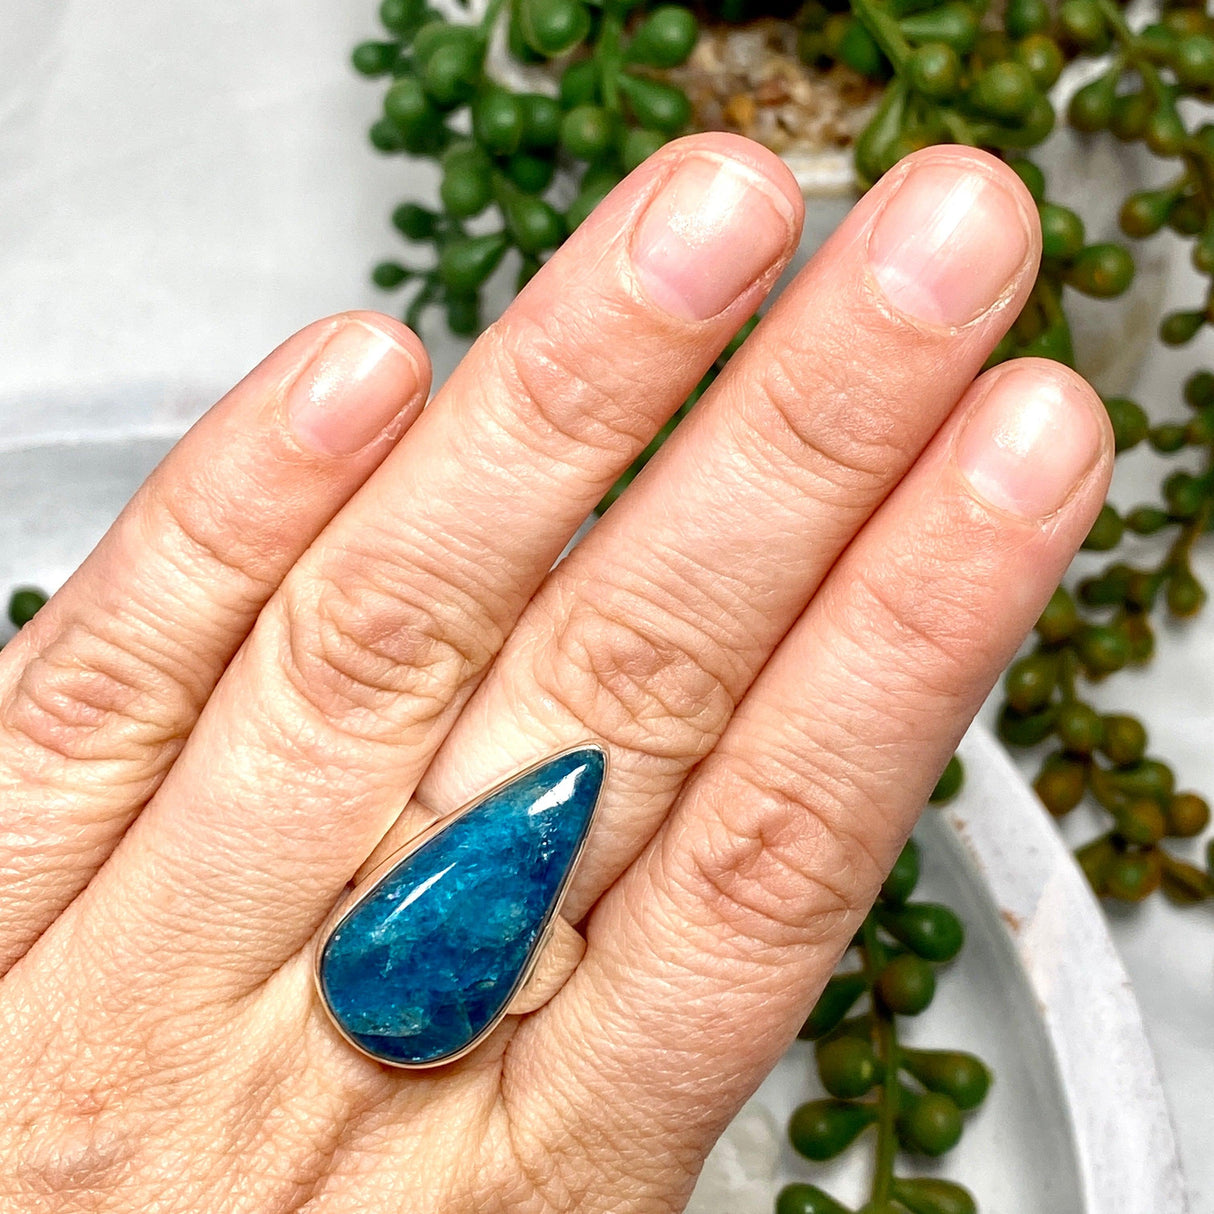 Blue Apatite teardrop ring s.9 KRGJ2455 - Nature's Magick